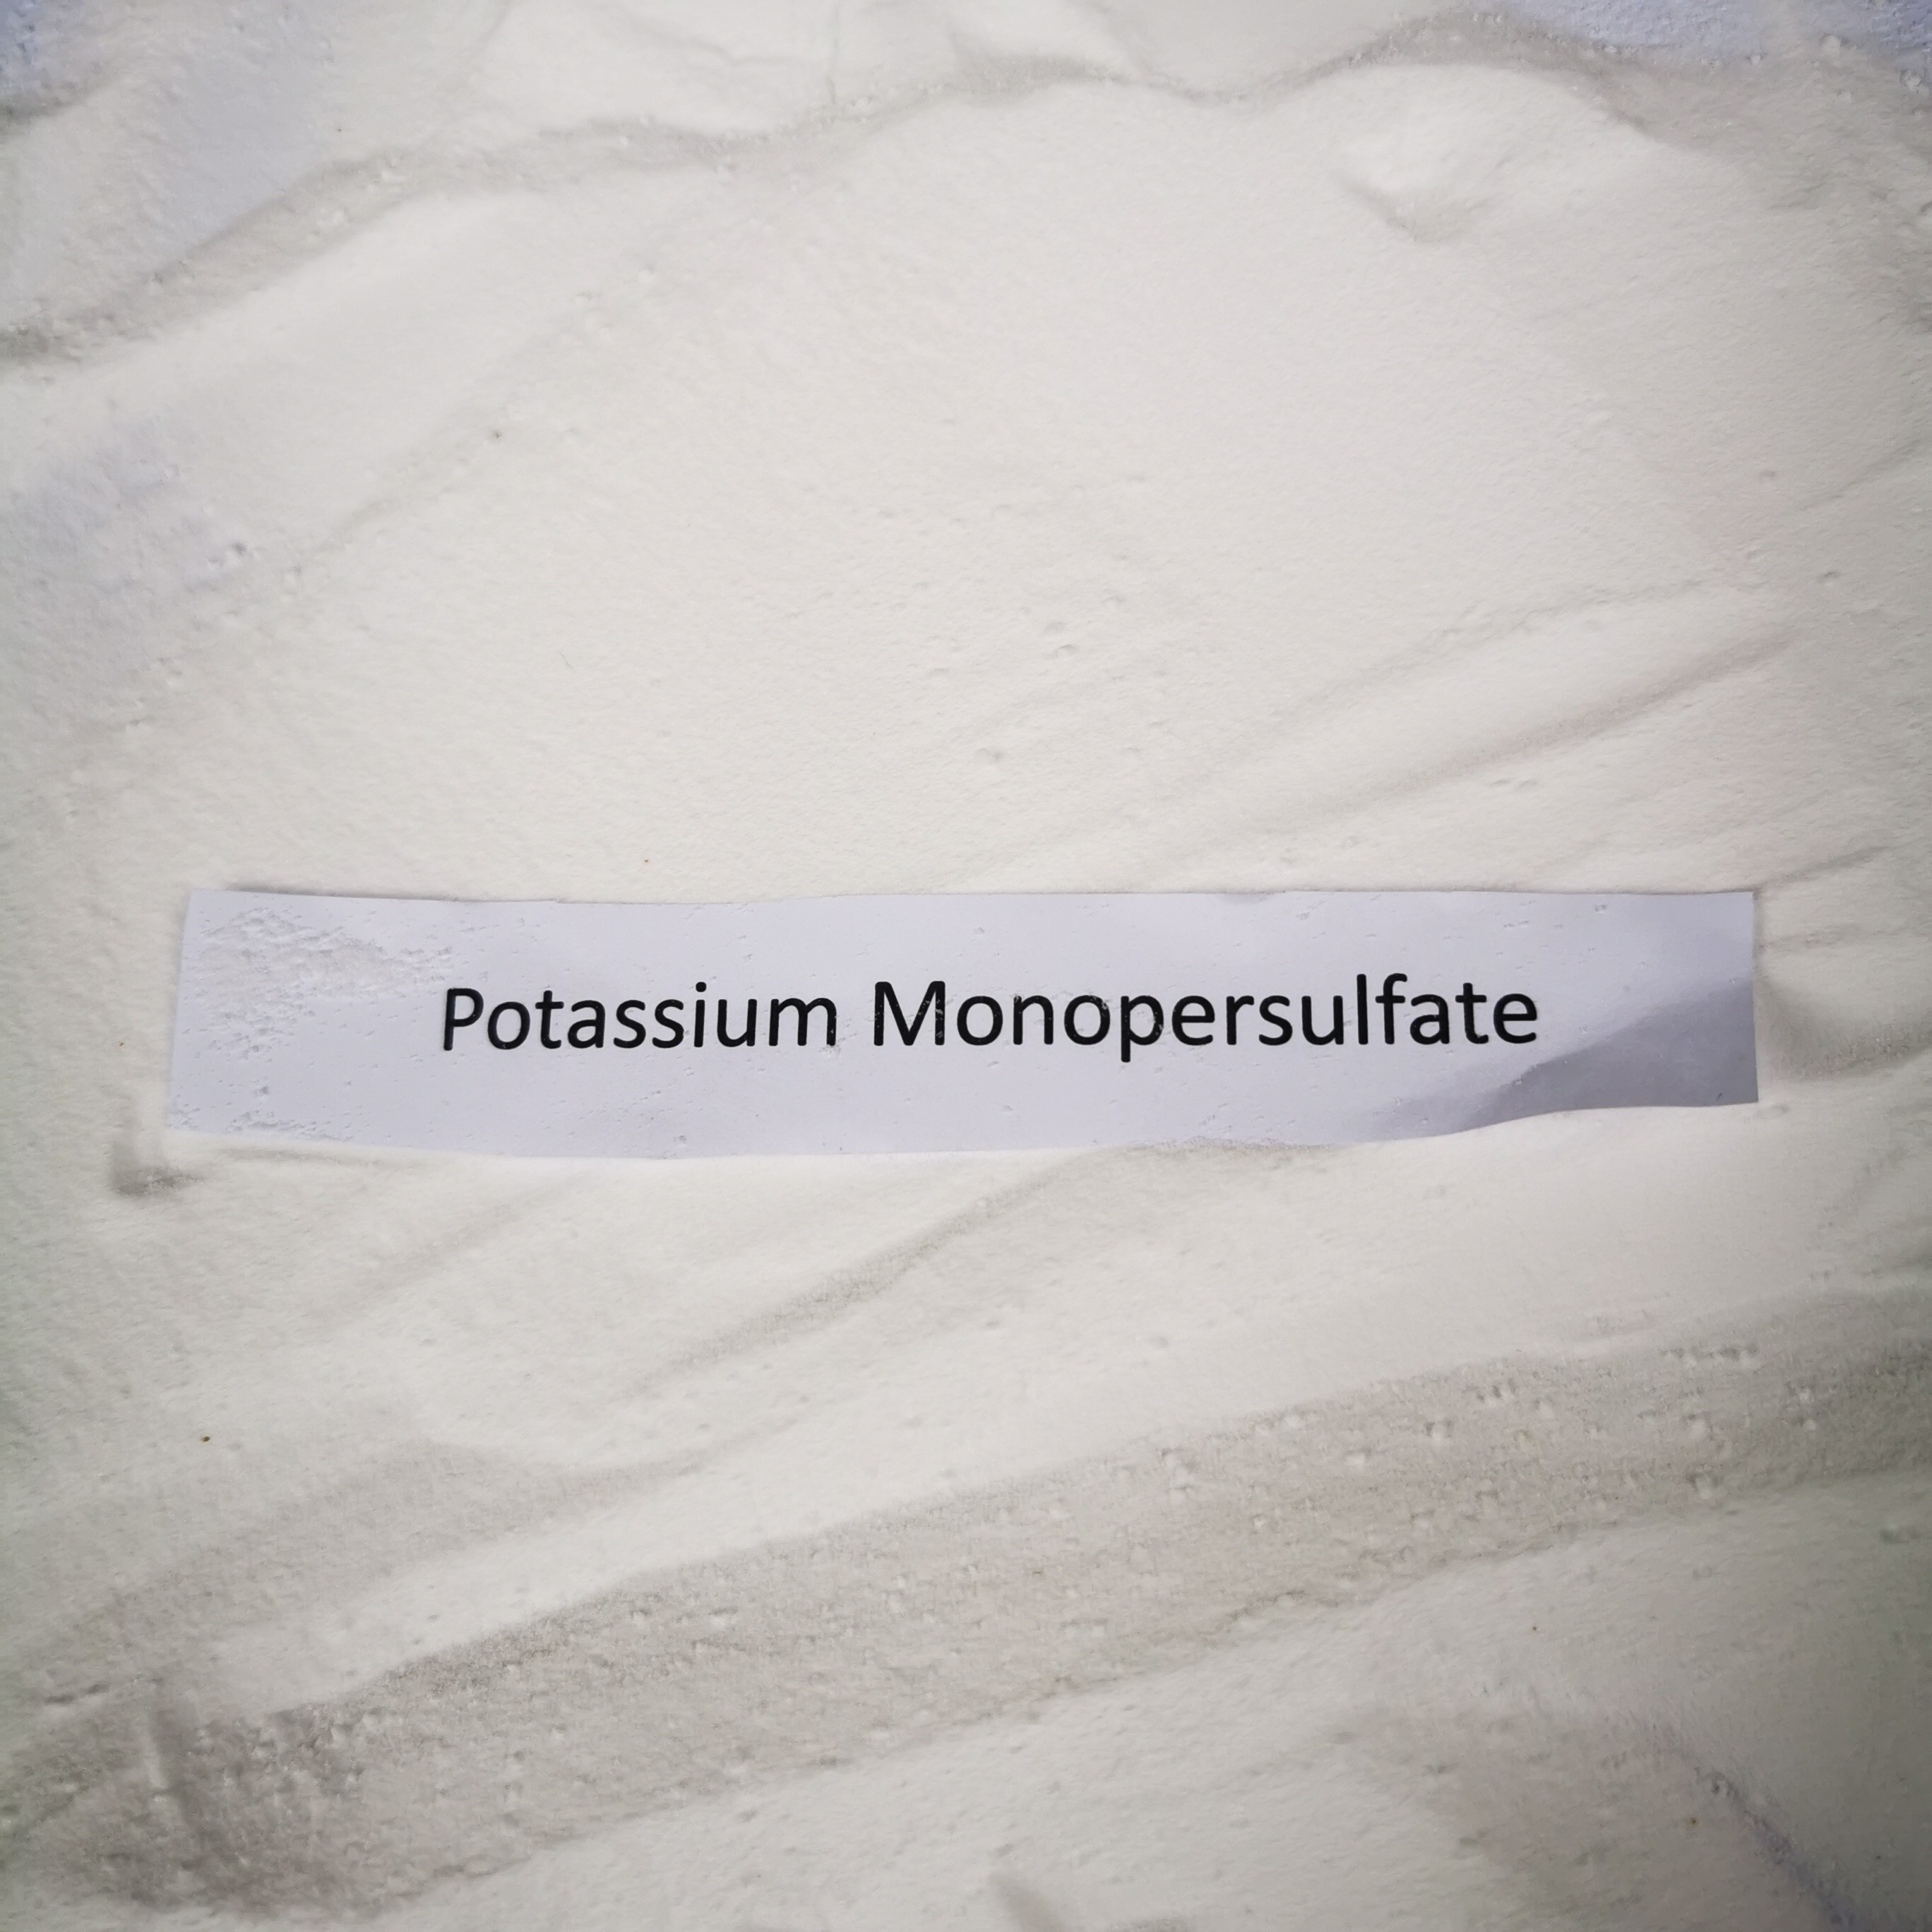 Kalium-Monopersulfate-Mittel als starker Oxidizer oder Desinfektionsmittel